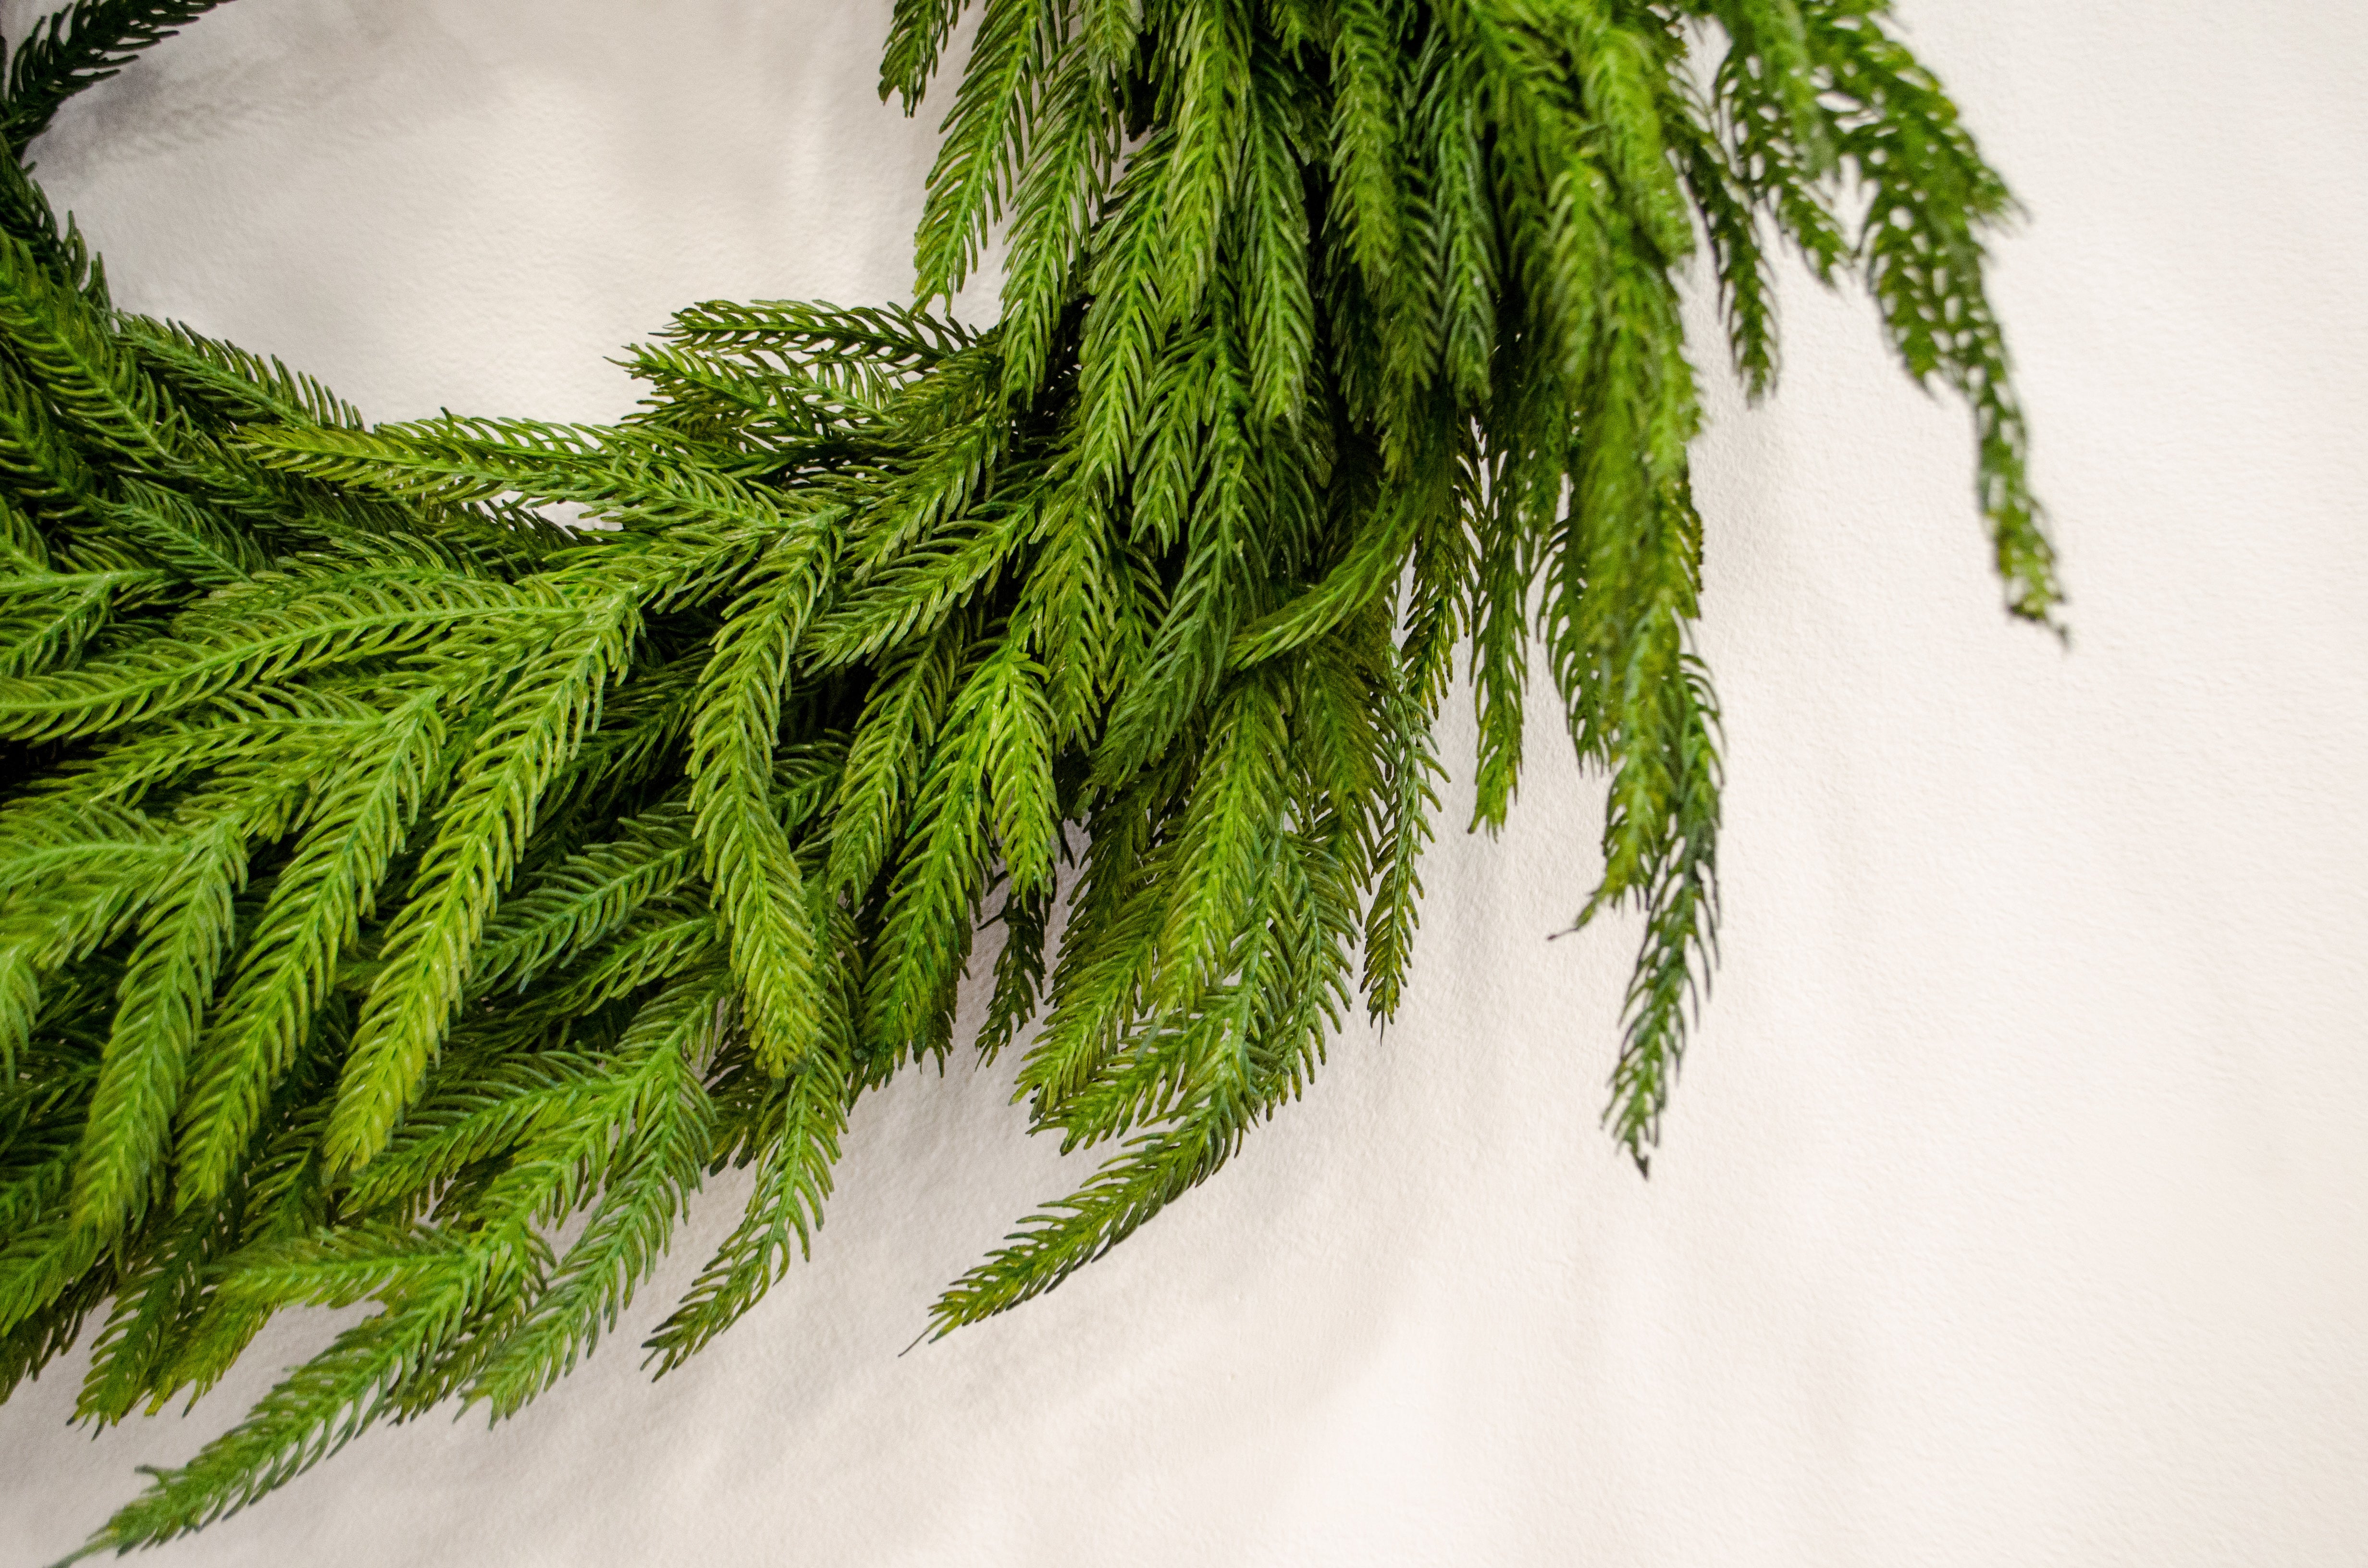 Norfolk Pine Wreath - 24"